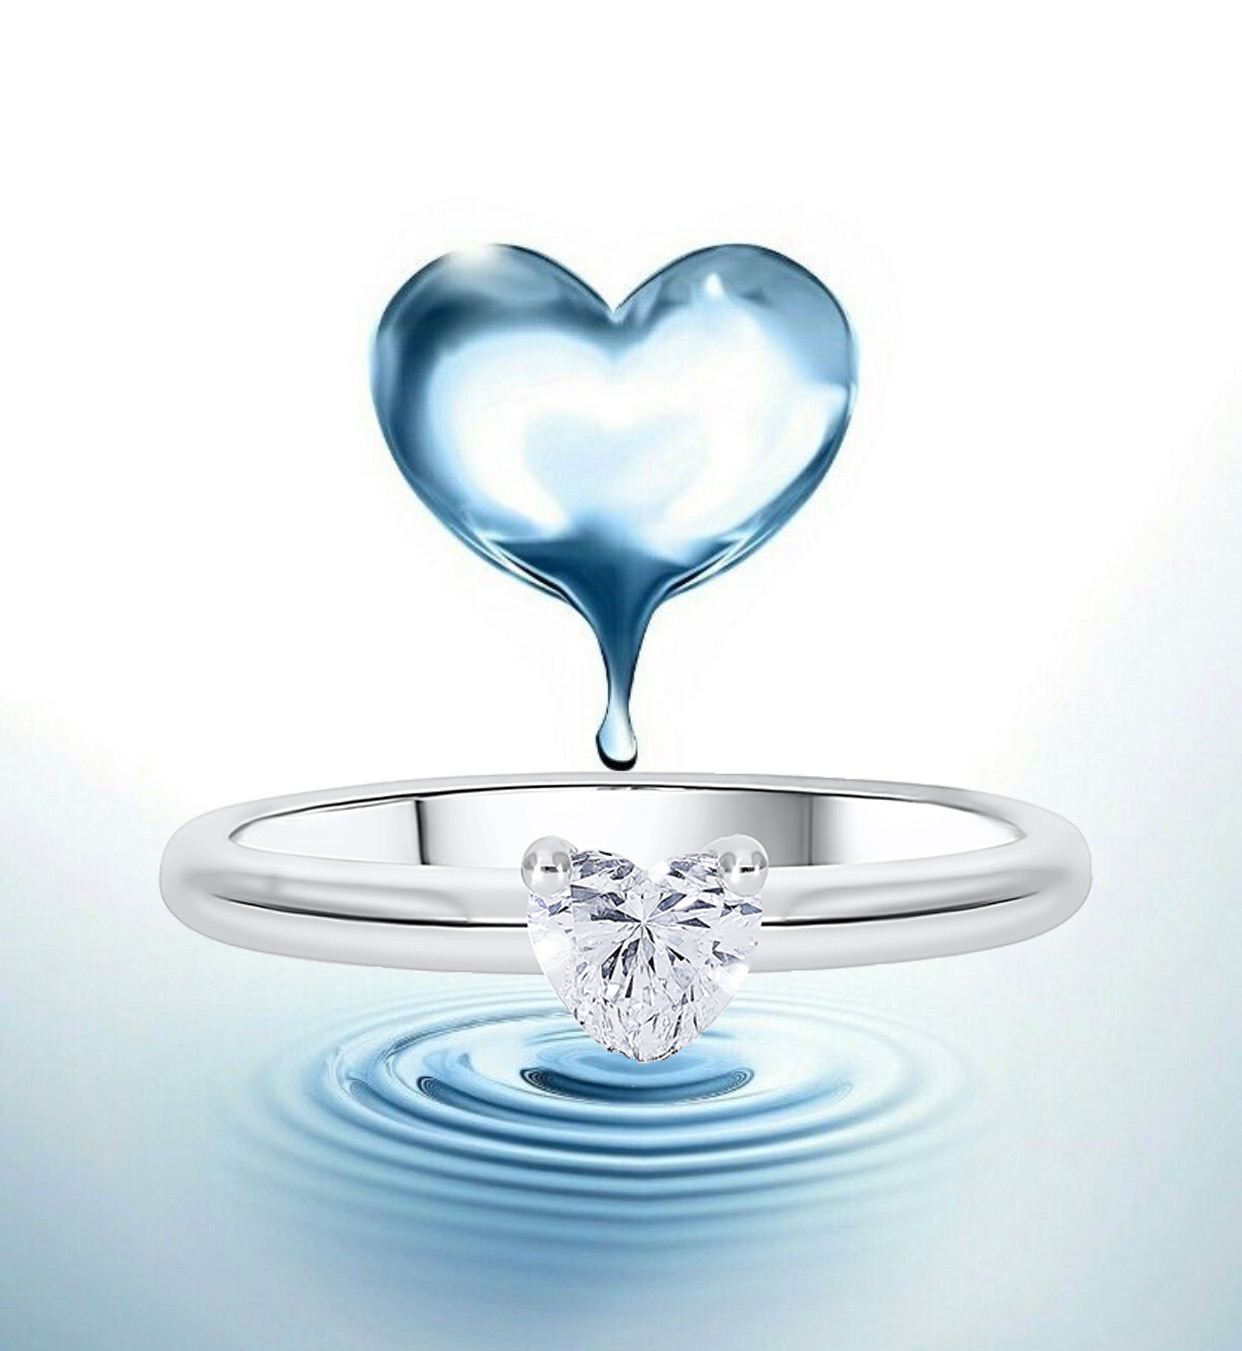 Inelul de logodna. Cum sa alegi diamantul potrivit pentru inelul de logodna si ce inseamna inel solitaire?